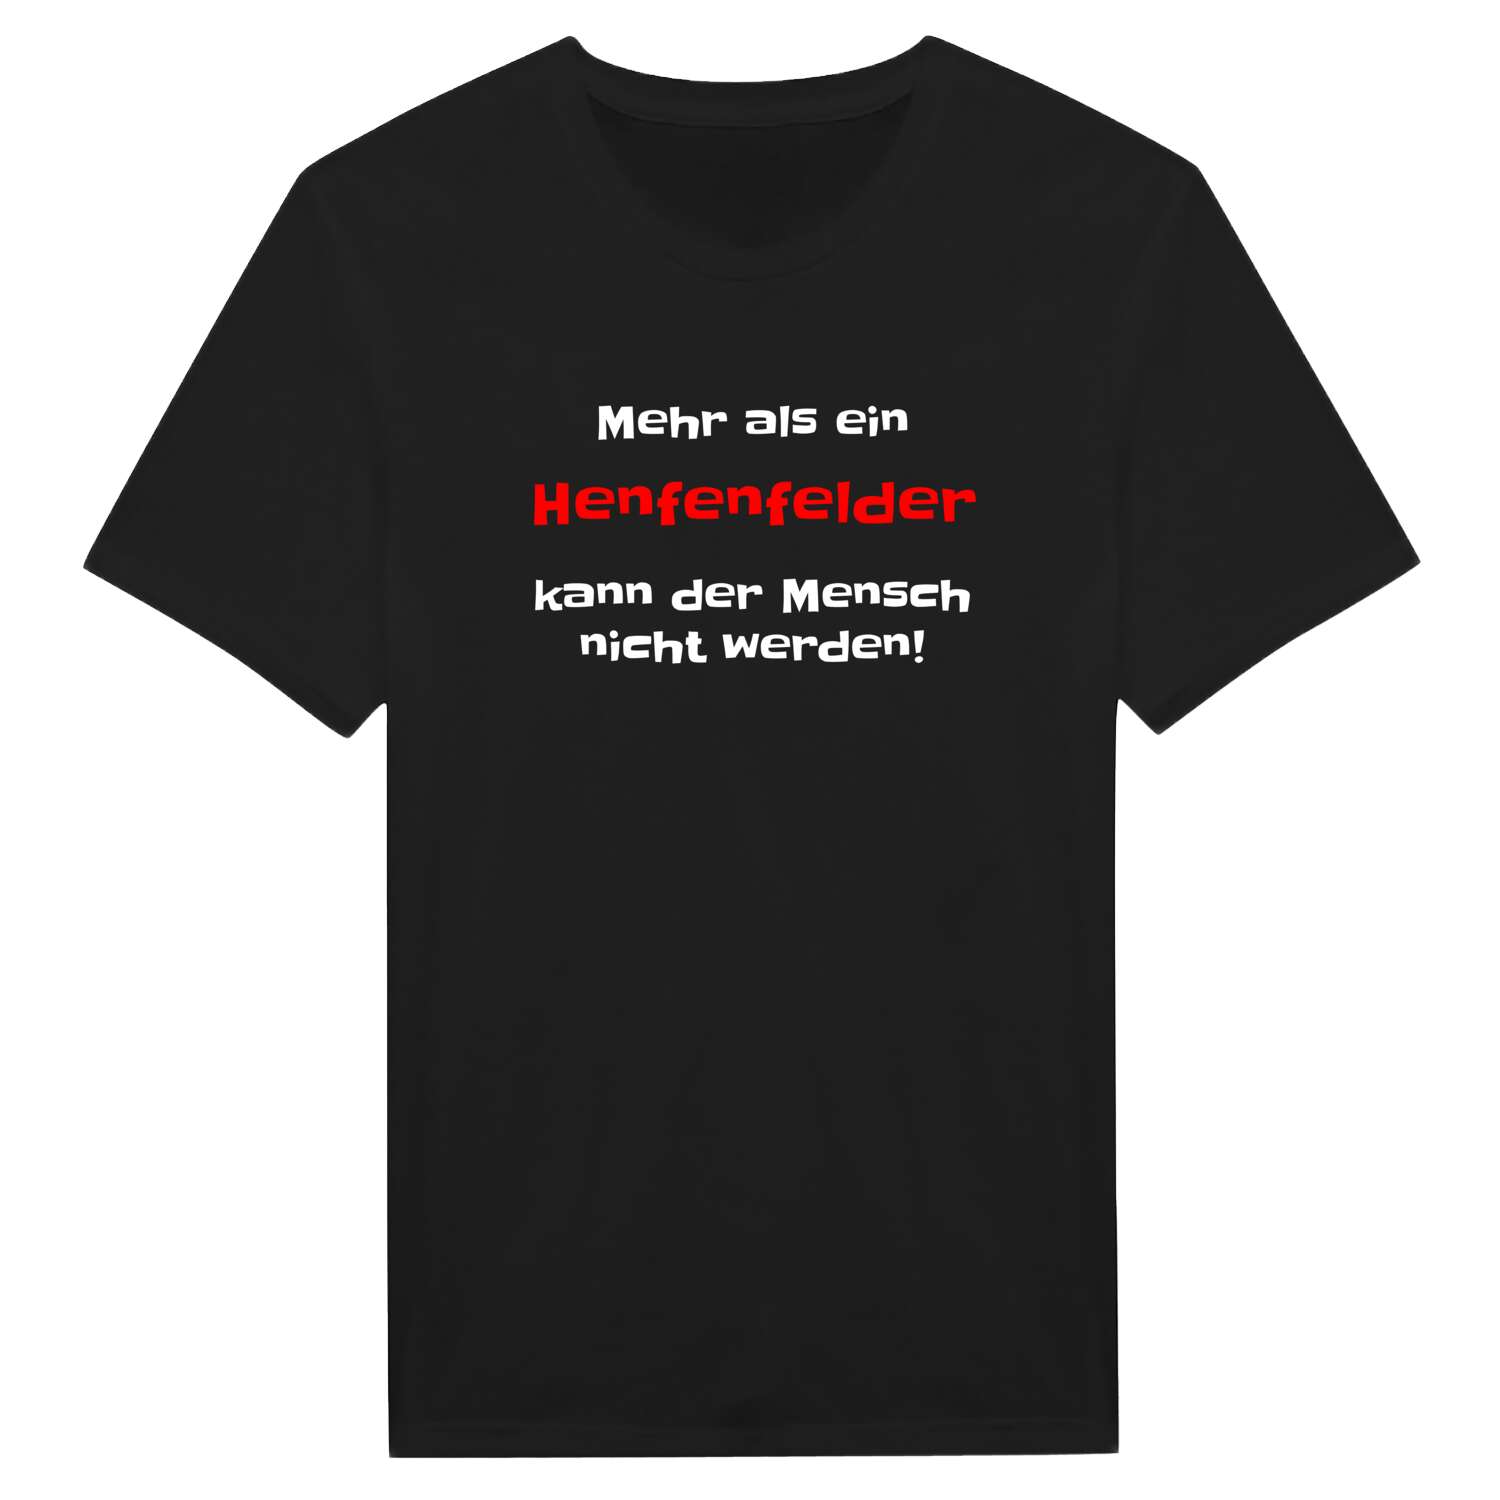 Henfenfeld T-Shirt »Mehr als ein«